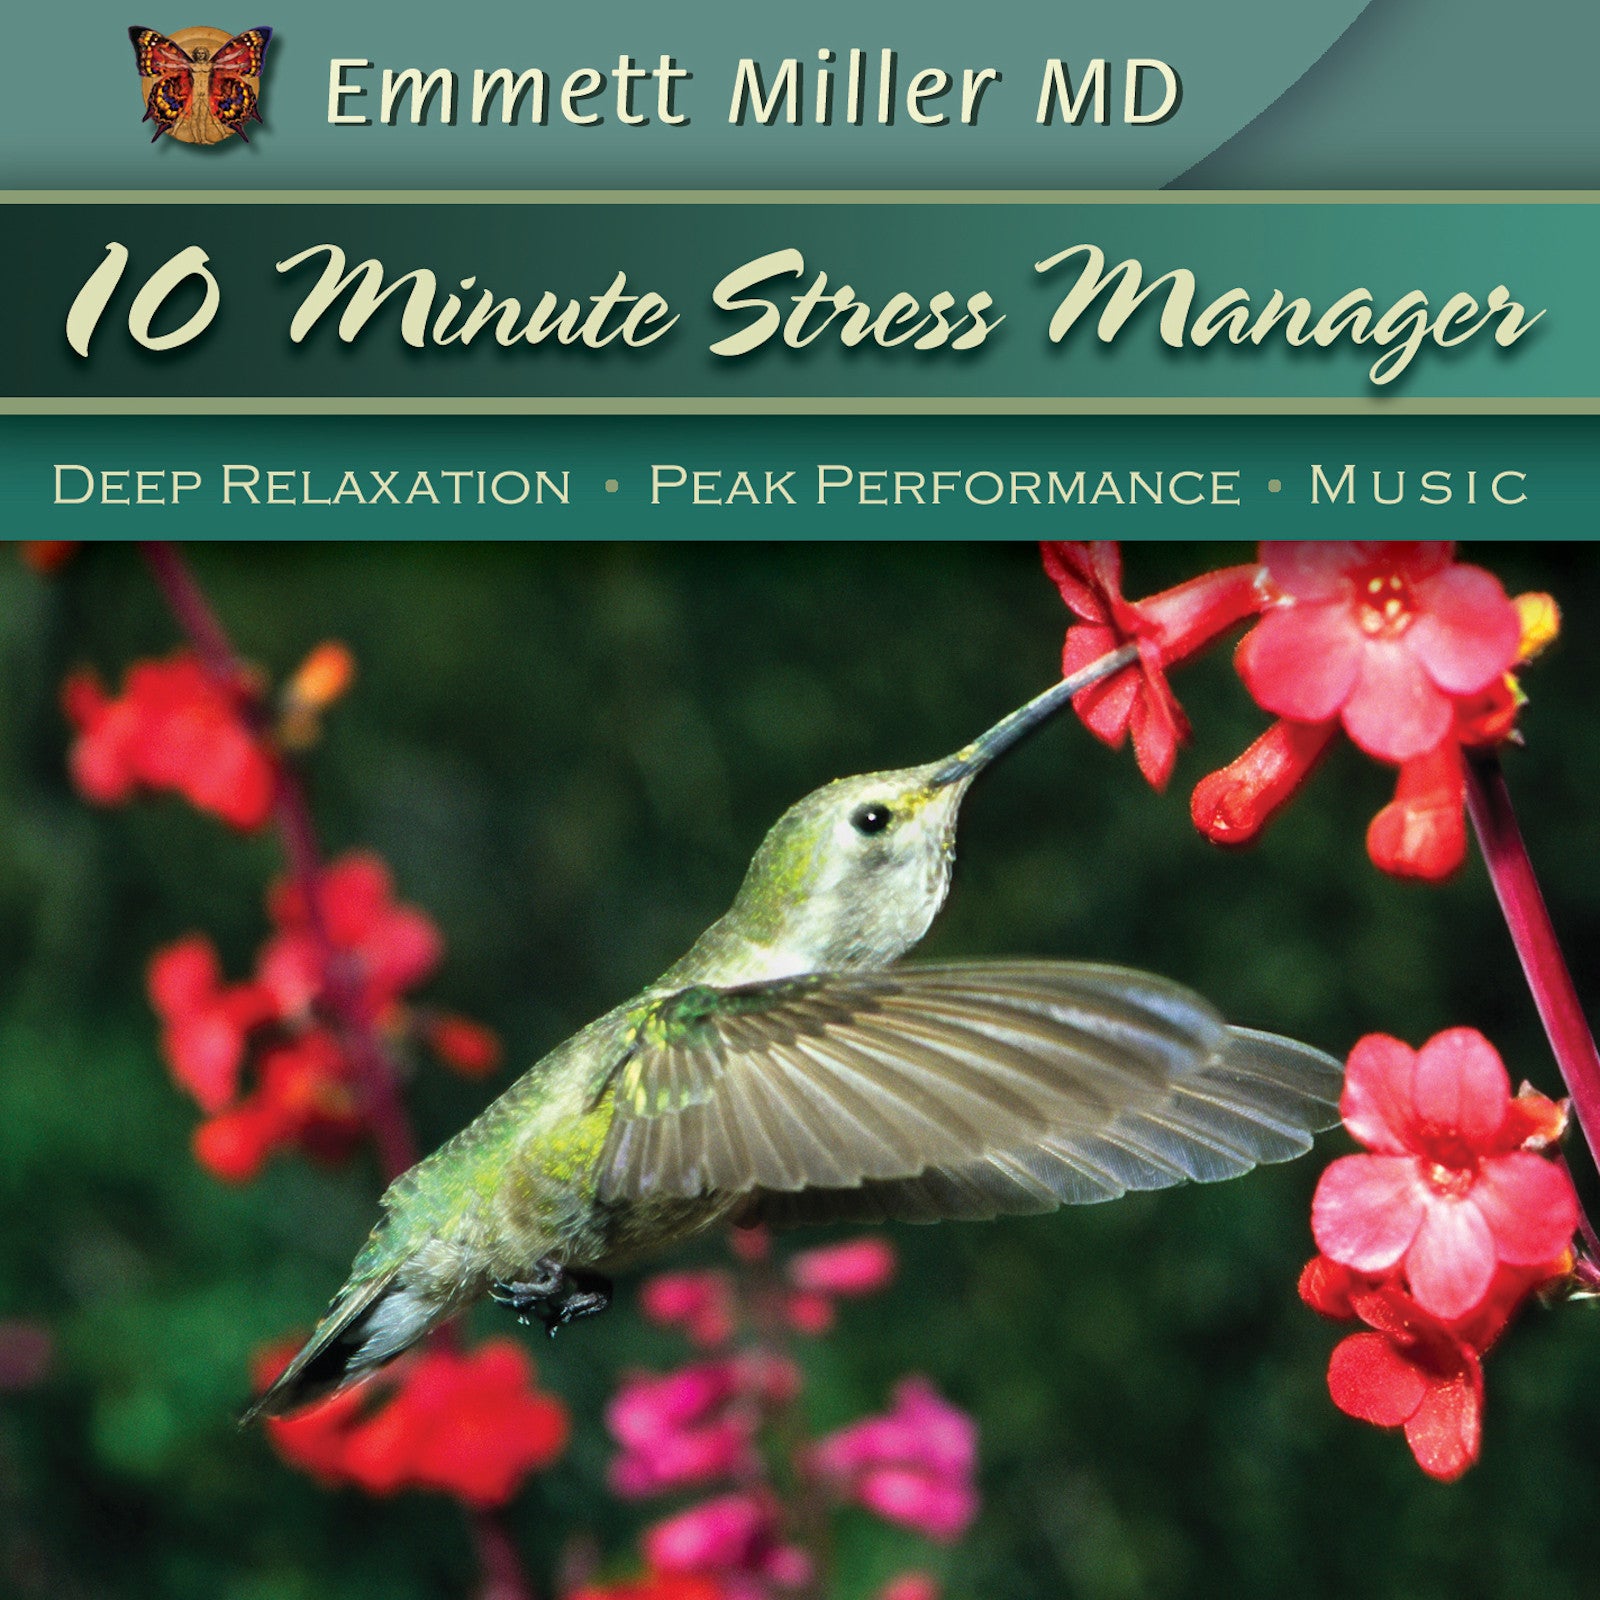 Ten-Minute Stress Manager with Dr. Emmett Miller Audio Program Dr. Emmett Miller - BetterListen!